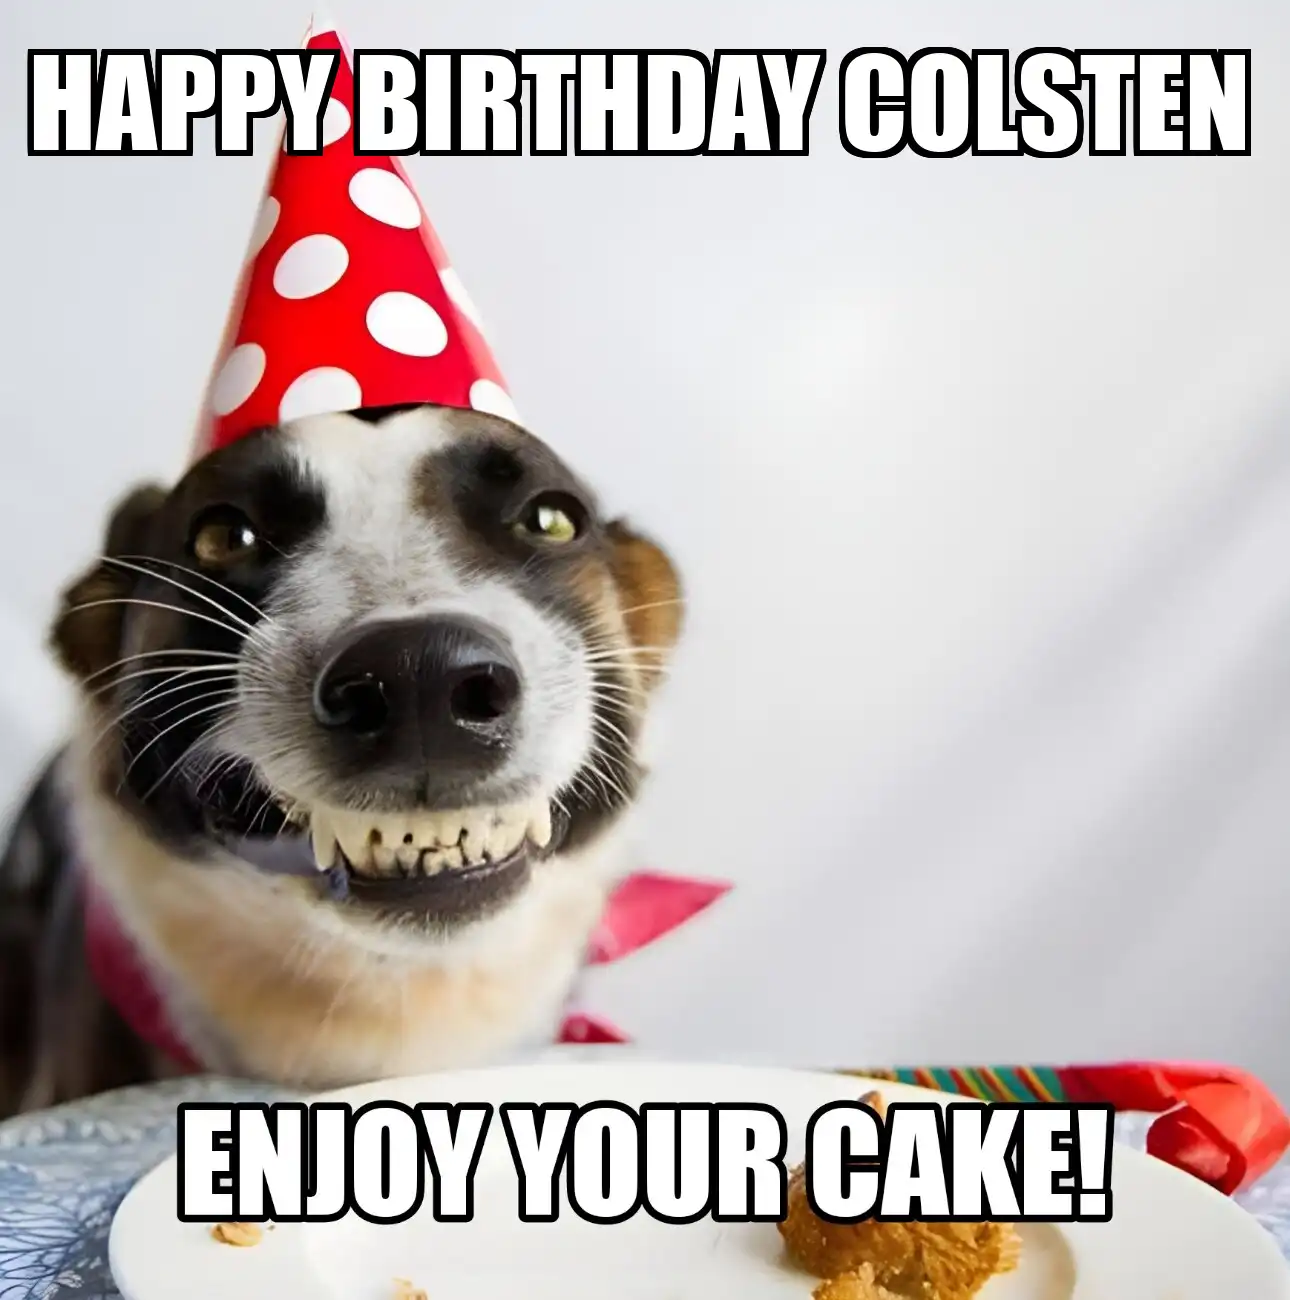 Happy Birthday Colsten Enjoy Your Cake Dog Meme